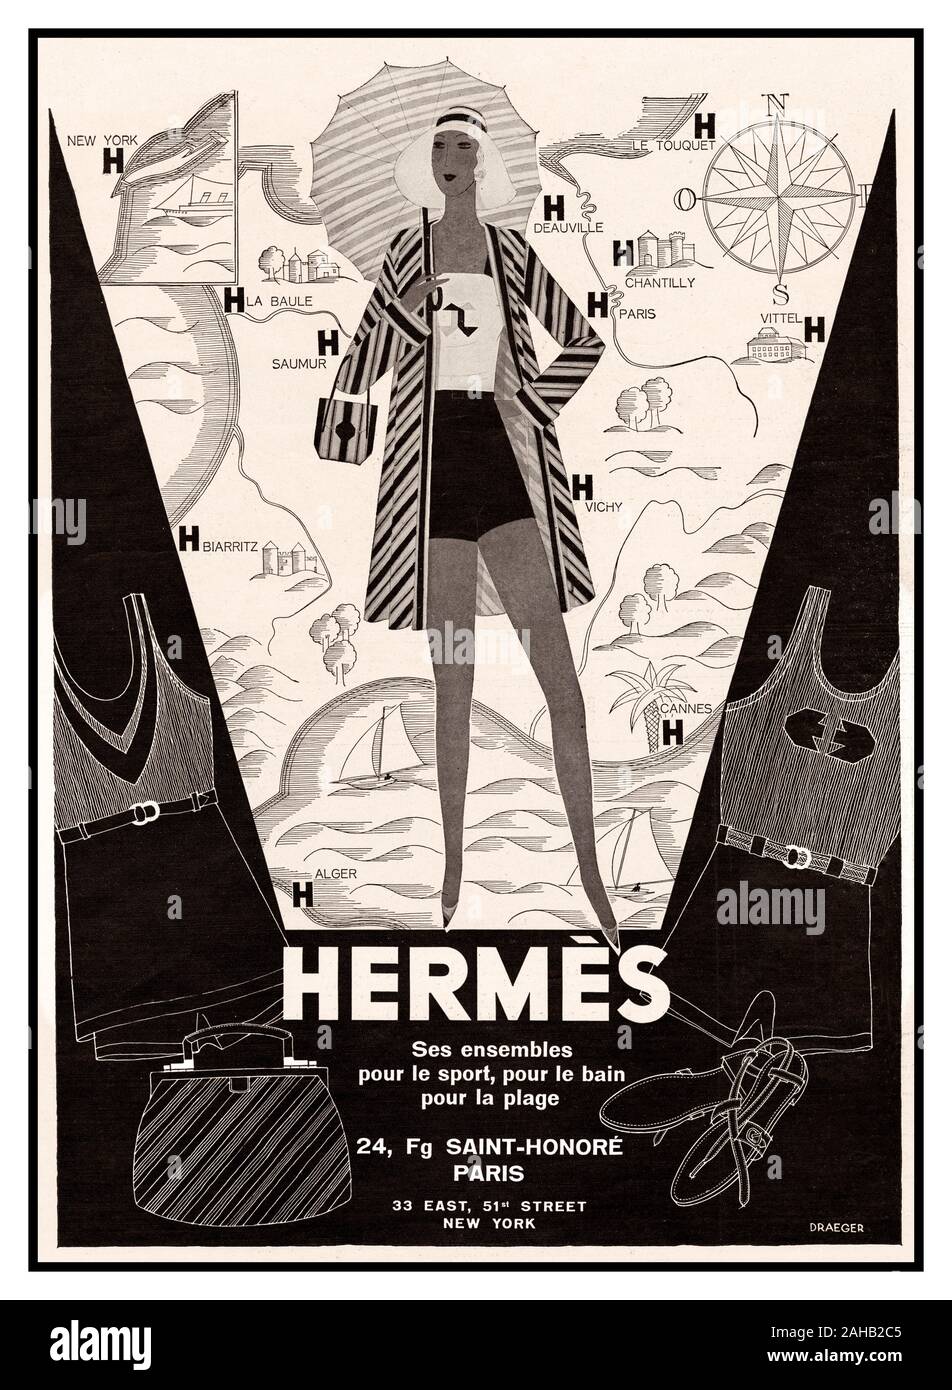 HERMÈS vintage degli anni trenta illustrazione pagina pubblicità francese per Hermès lusso abbigliamento sportswear sovrapposti su una mappa di opportuni luoghi di villeggiatura - tutte le posizioni con i negozi di Hermès (indicato da una coraggiosa lettera 'H'). In Francia l'illustrazione Magazine Pubblicazione, Giugno 7, 1930 Parigi e New York Foto Stock